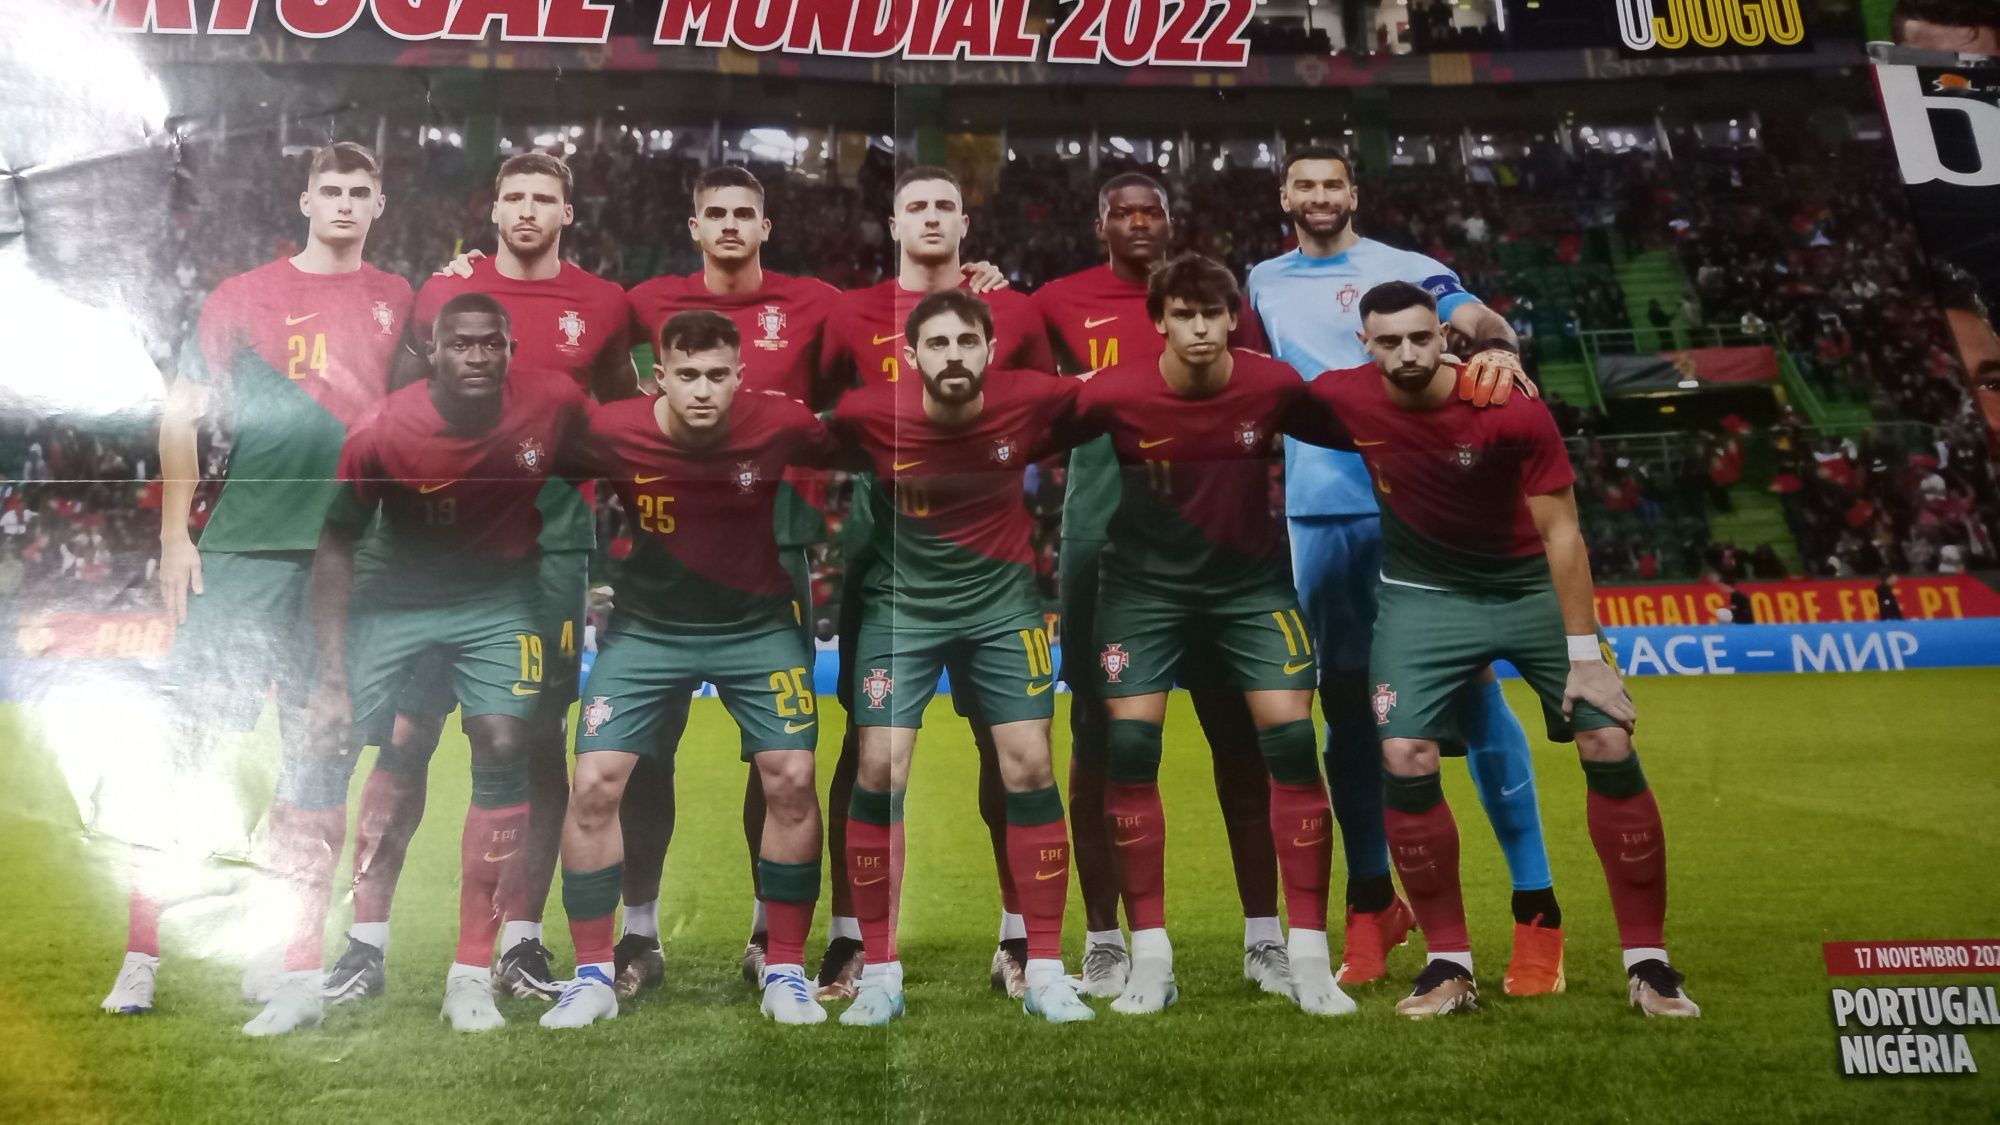 poster de Ronaldo na seleção no mundial 2022